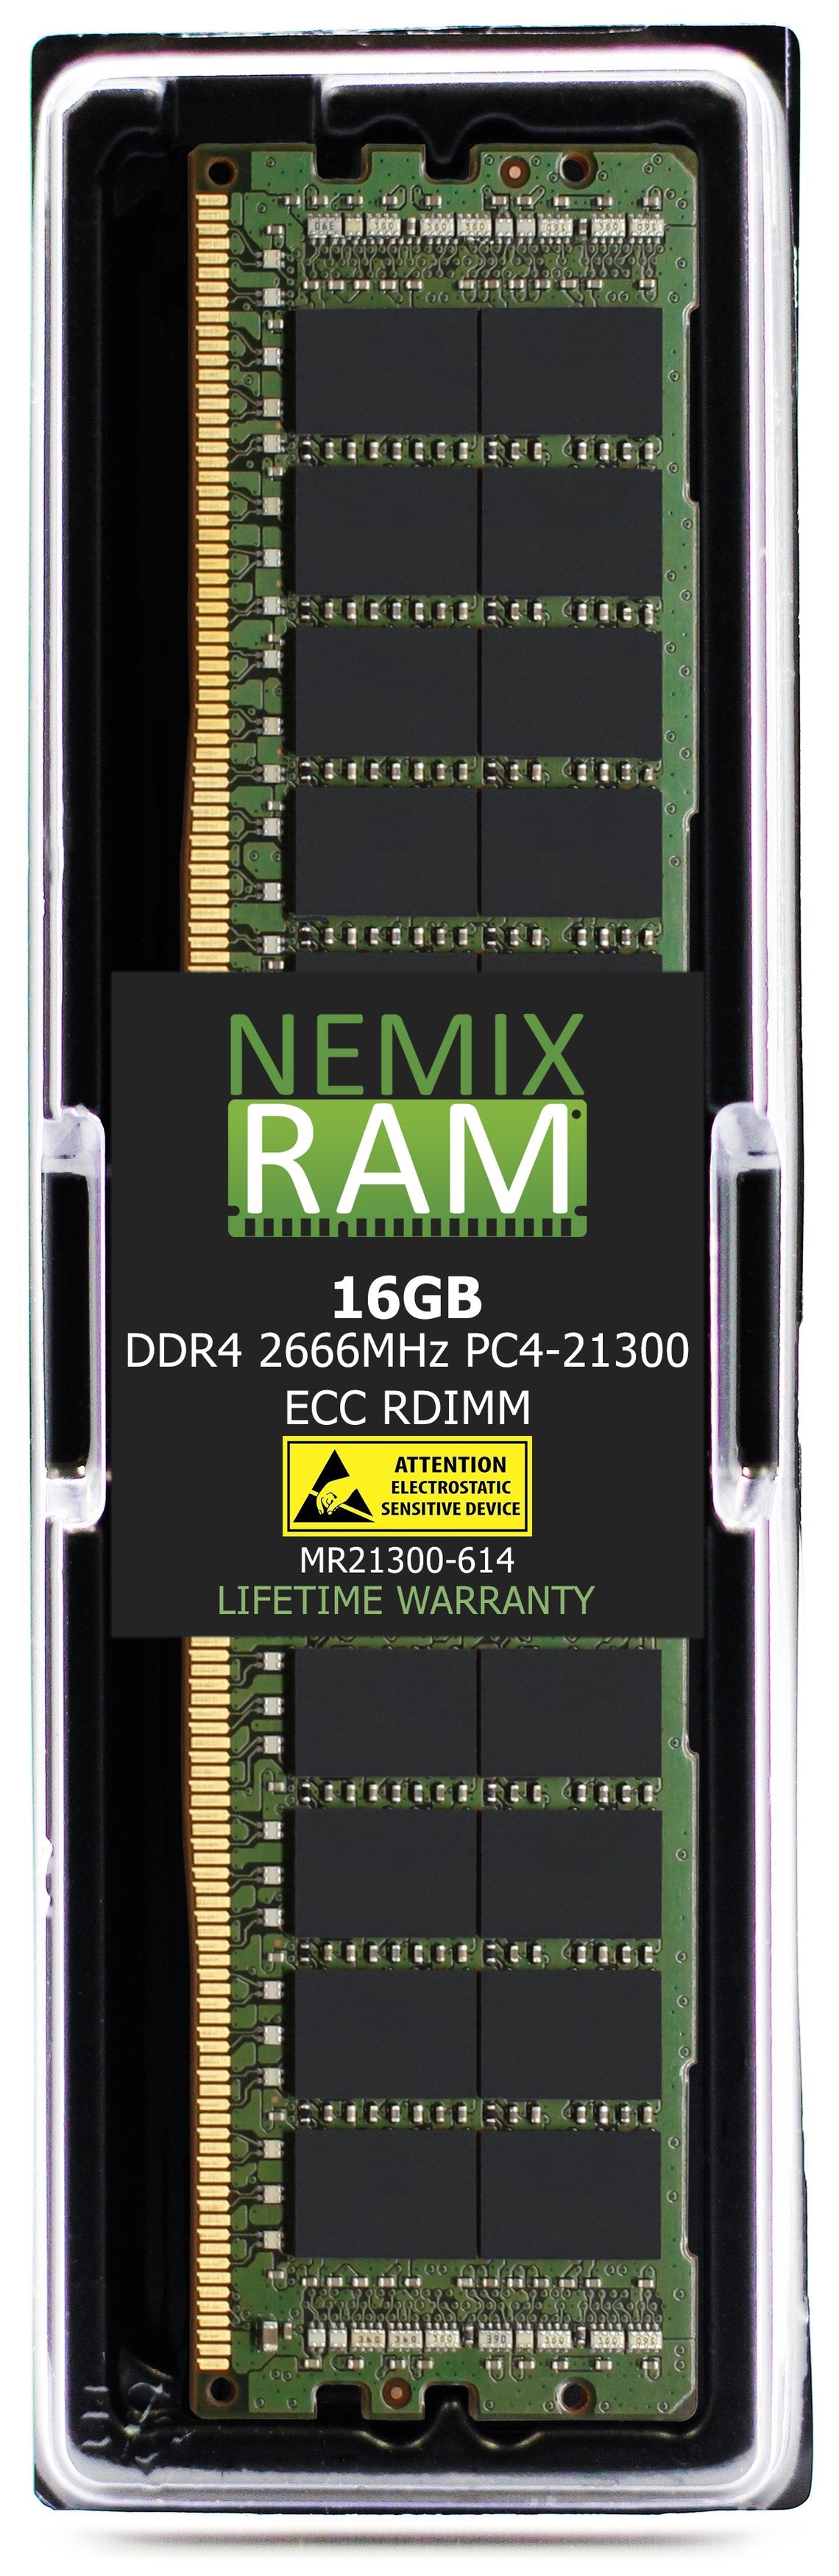 16GB DDR4 2666MHZ PC4-21300 RDIMM Compatible with Supermicro MEM-DR416L-CL02-ER26